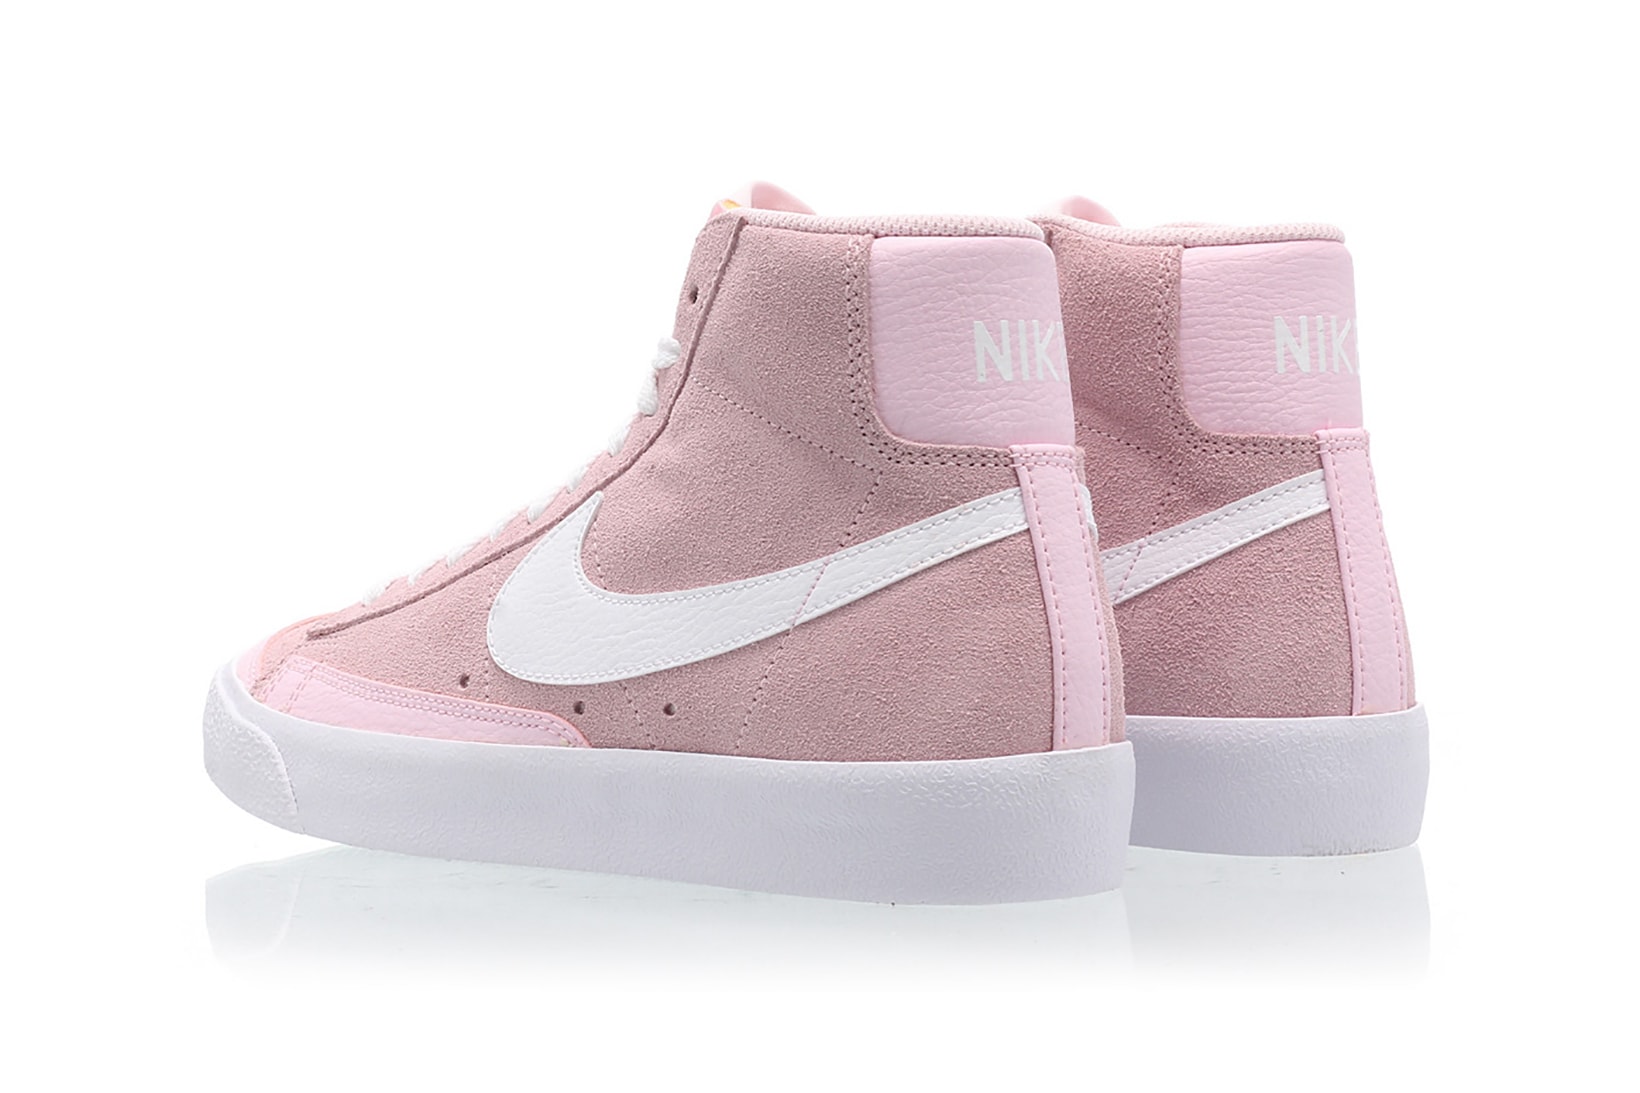 nike blazer mid vintage 77 womens sneakers pink white shoes footwear sneakerhead 